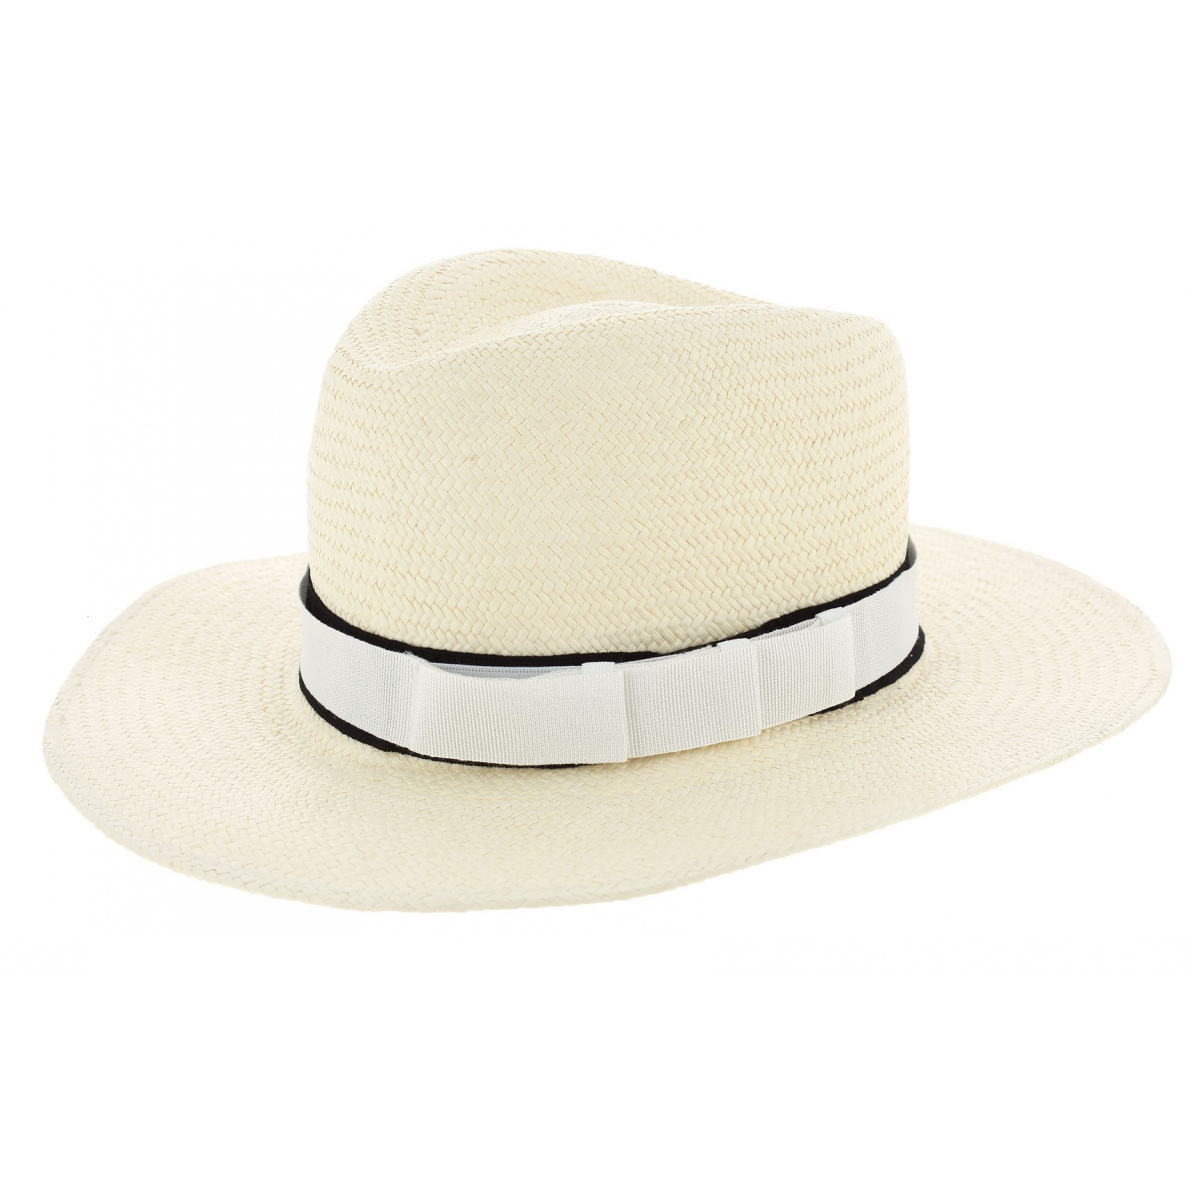 Chapeau de paille Panama avec ruban bleu de confection italienne